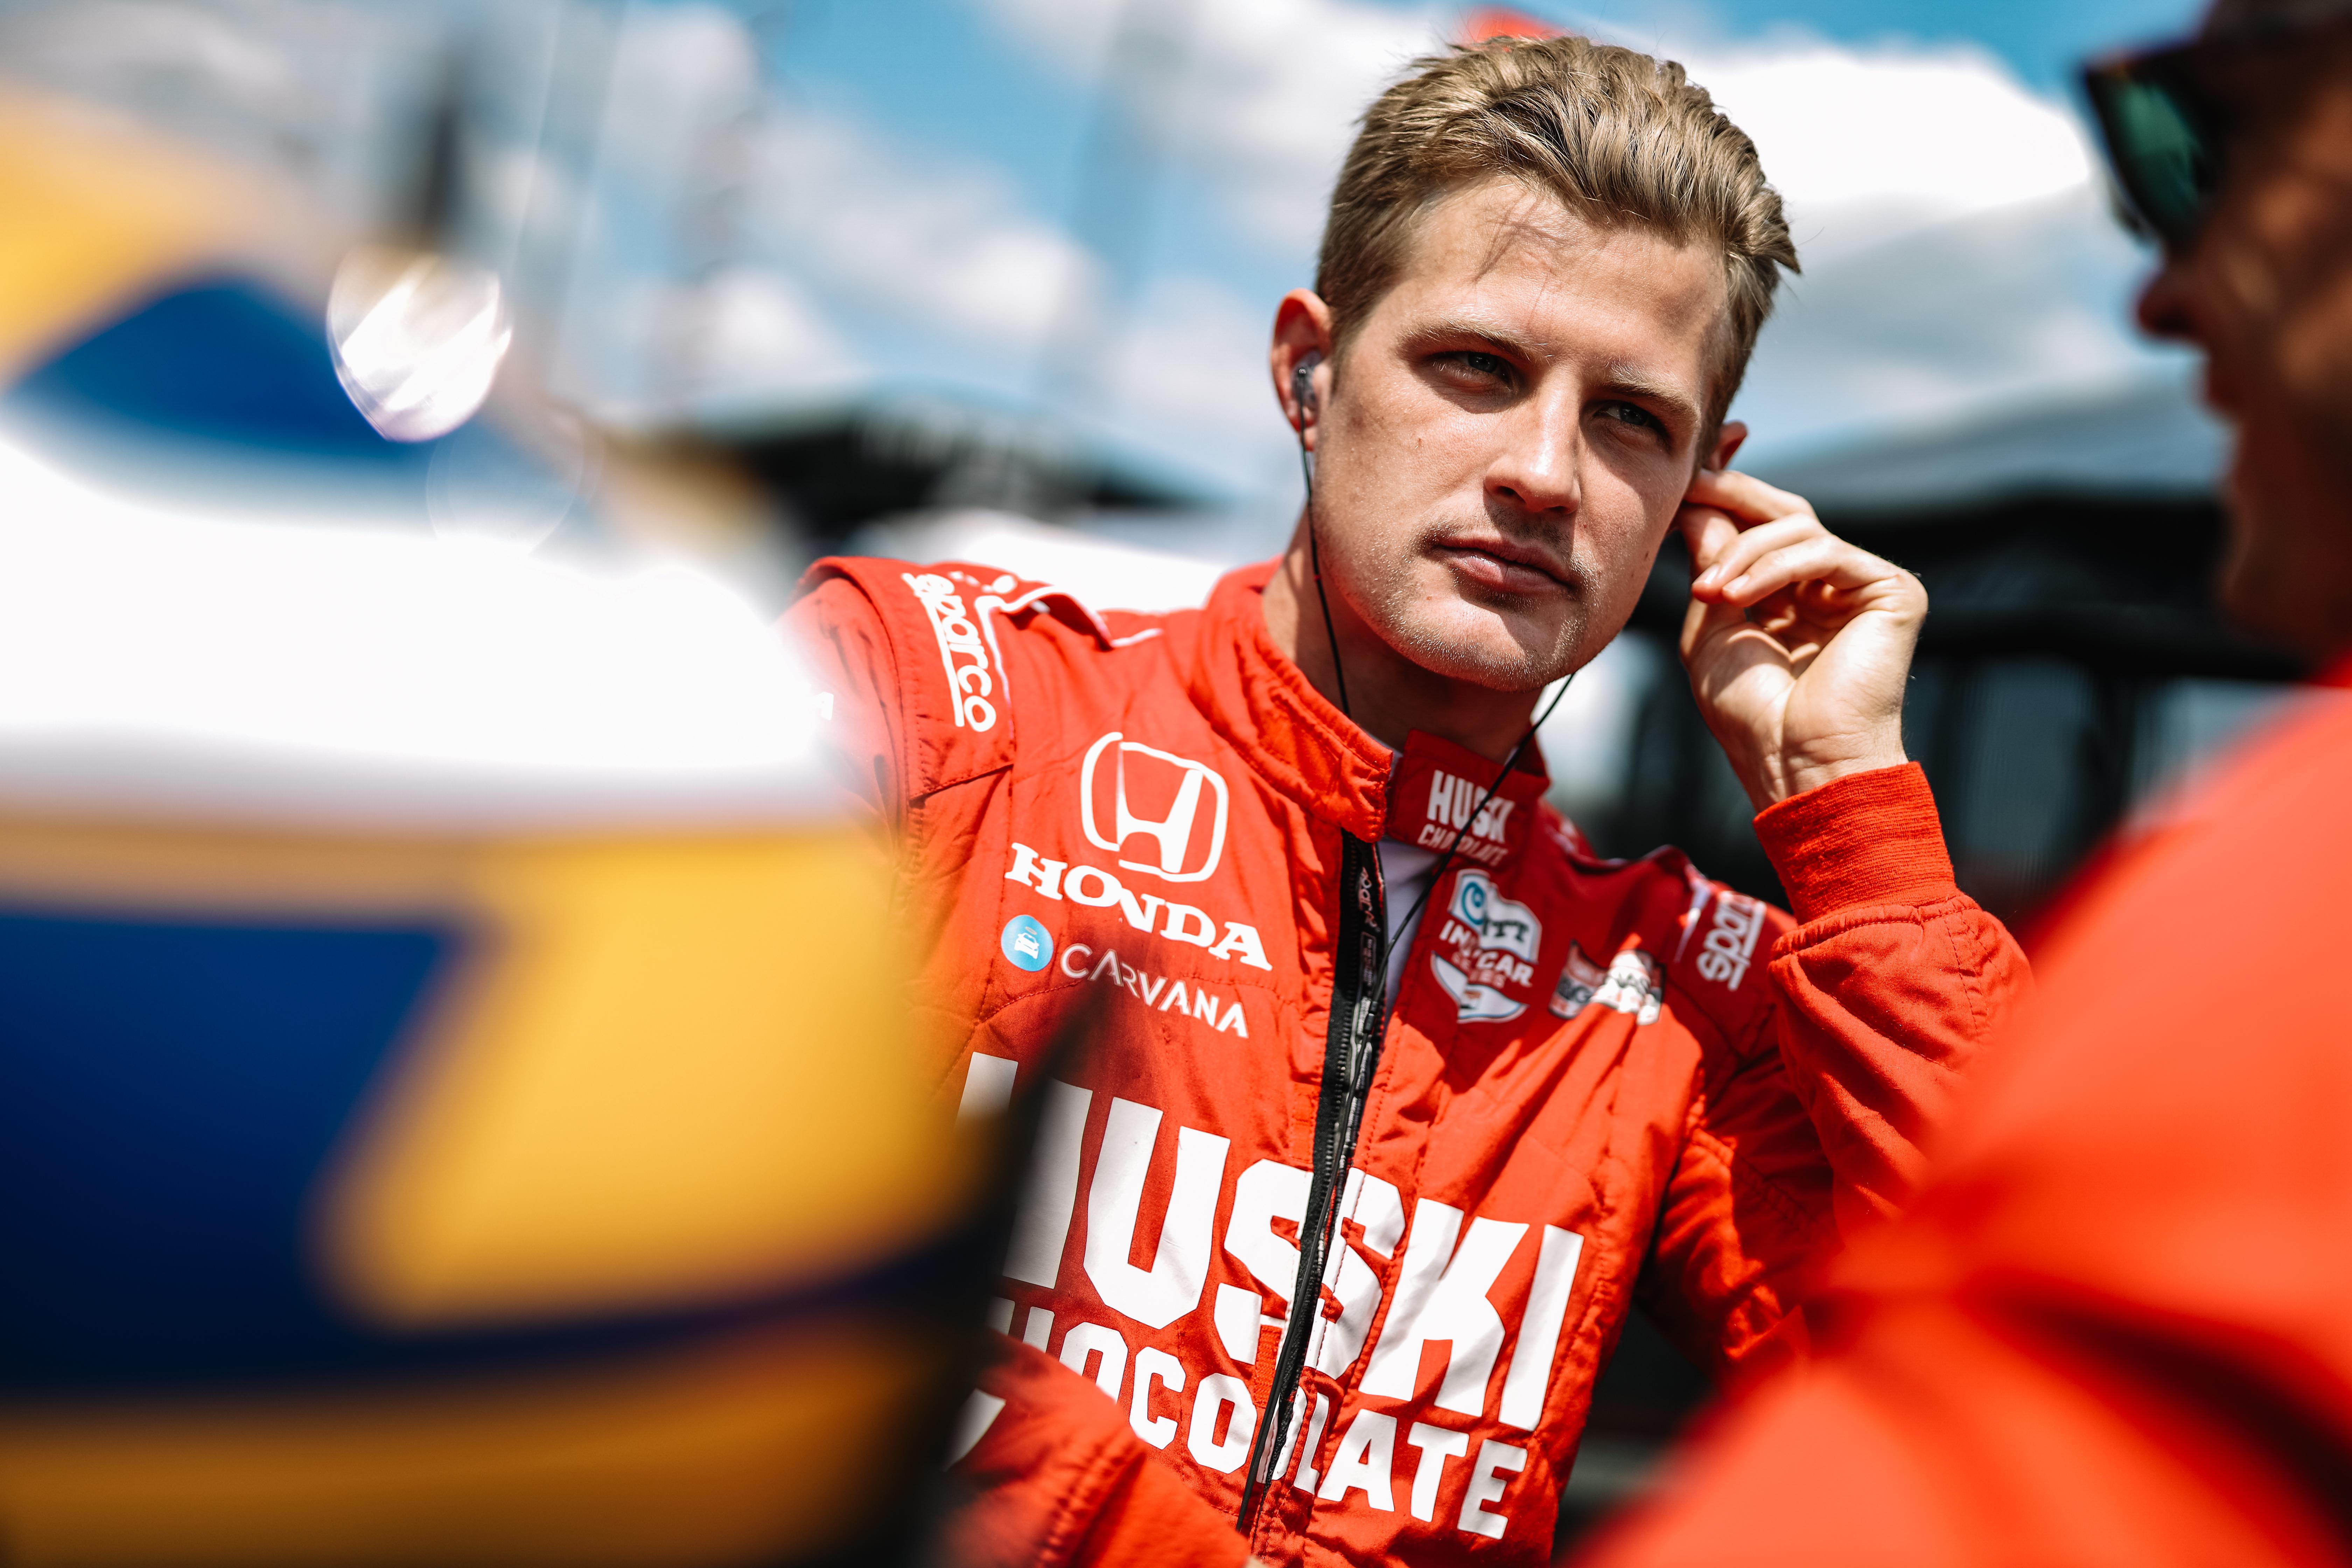 Oválok, F1 és fahéjas zsemle – Marcus Ericsson megadta magát az internet népének